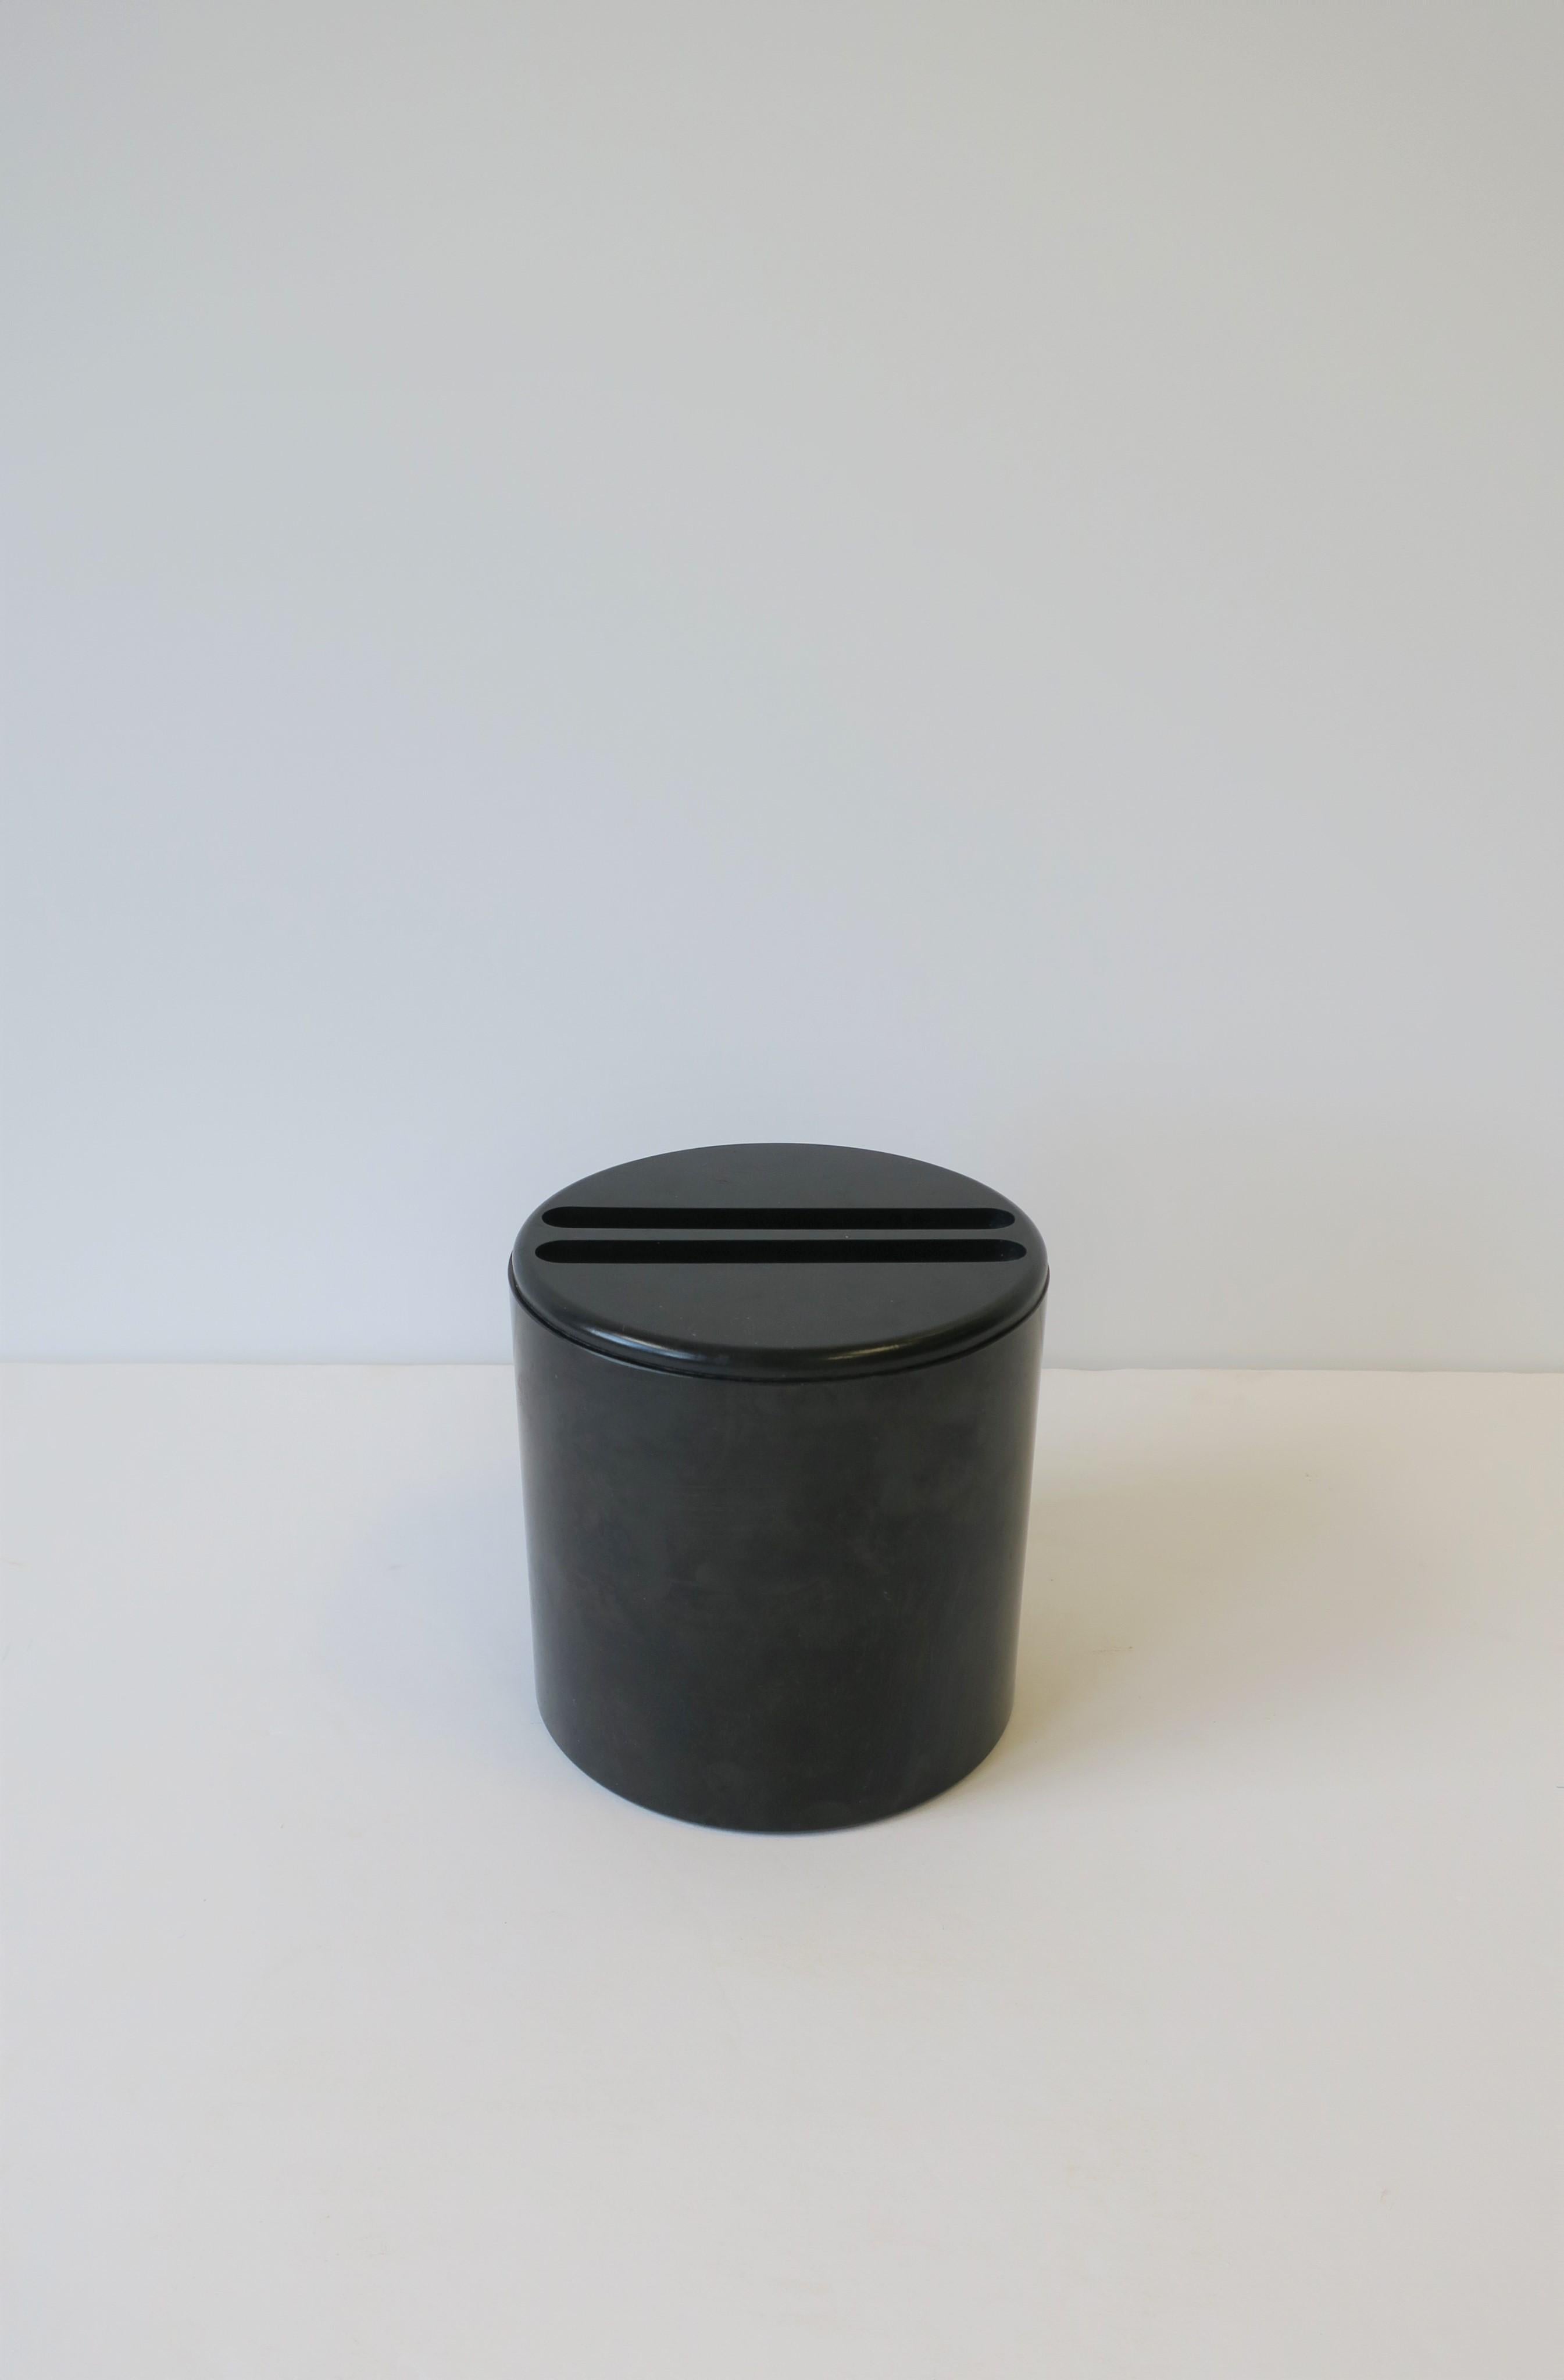 Boîte cylindrique ronde italienne noire de la période postmoderne, réalisée par l'architecte et designer G. F. 'Gianfranco' Frattini pour Progetti, vers la fin du XXe siècle, années 1980-1990, Italie. Une pièce idéale pour le stockage ou comme pièce